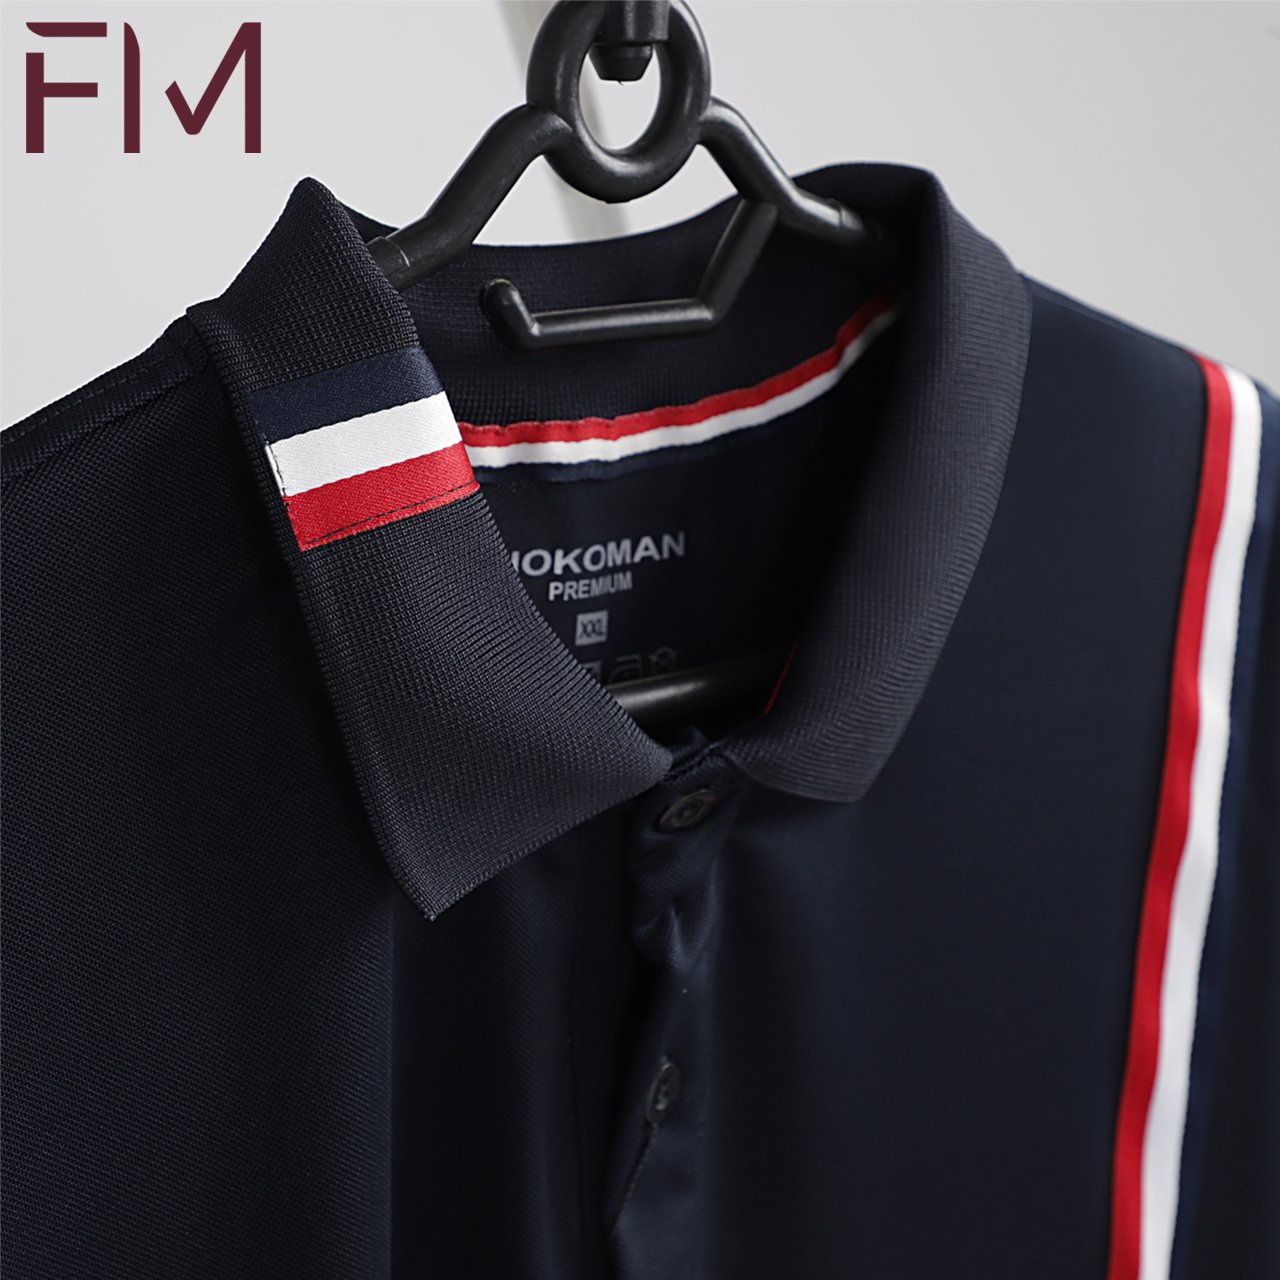 Áo polo nam, thời trang nam chất vải cao cấp, thiết kế kẻ dọc sang trọng, phù hợp nhiều hoạt động - FORMEN SHOP - FMHK005